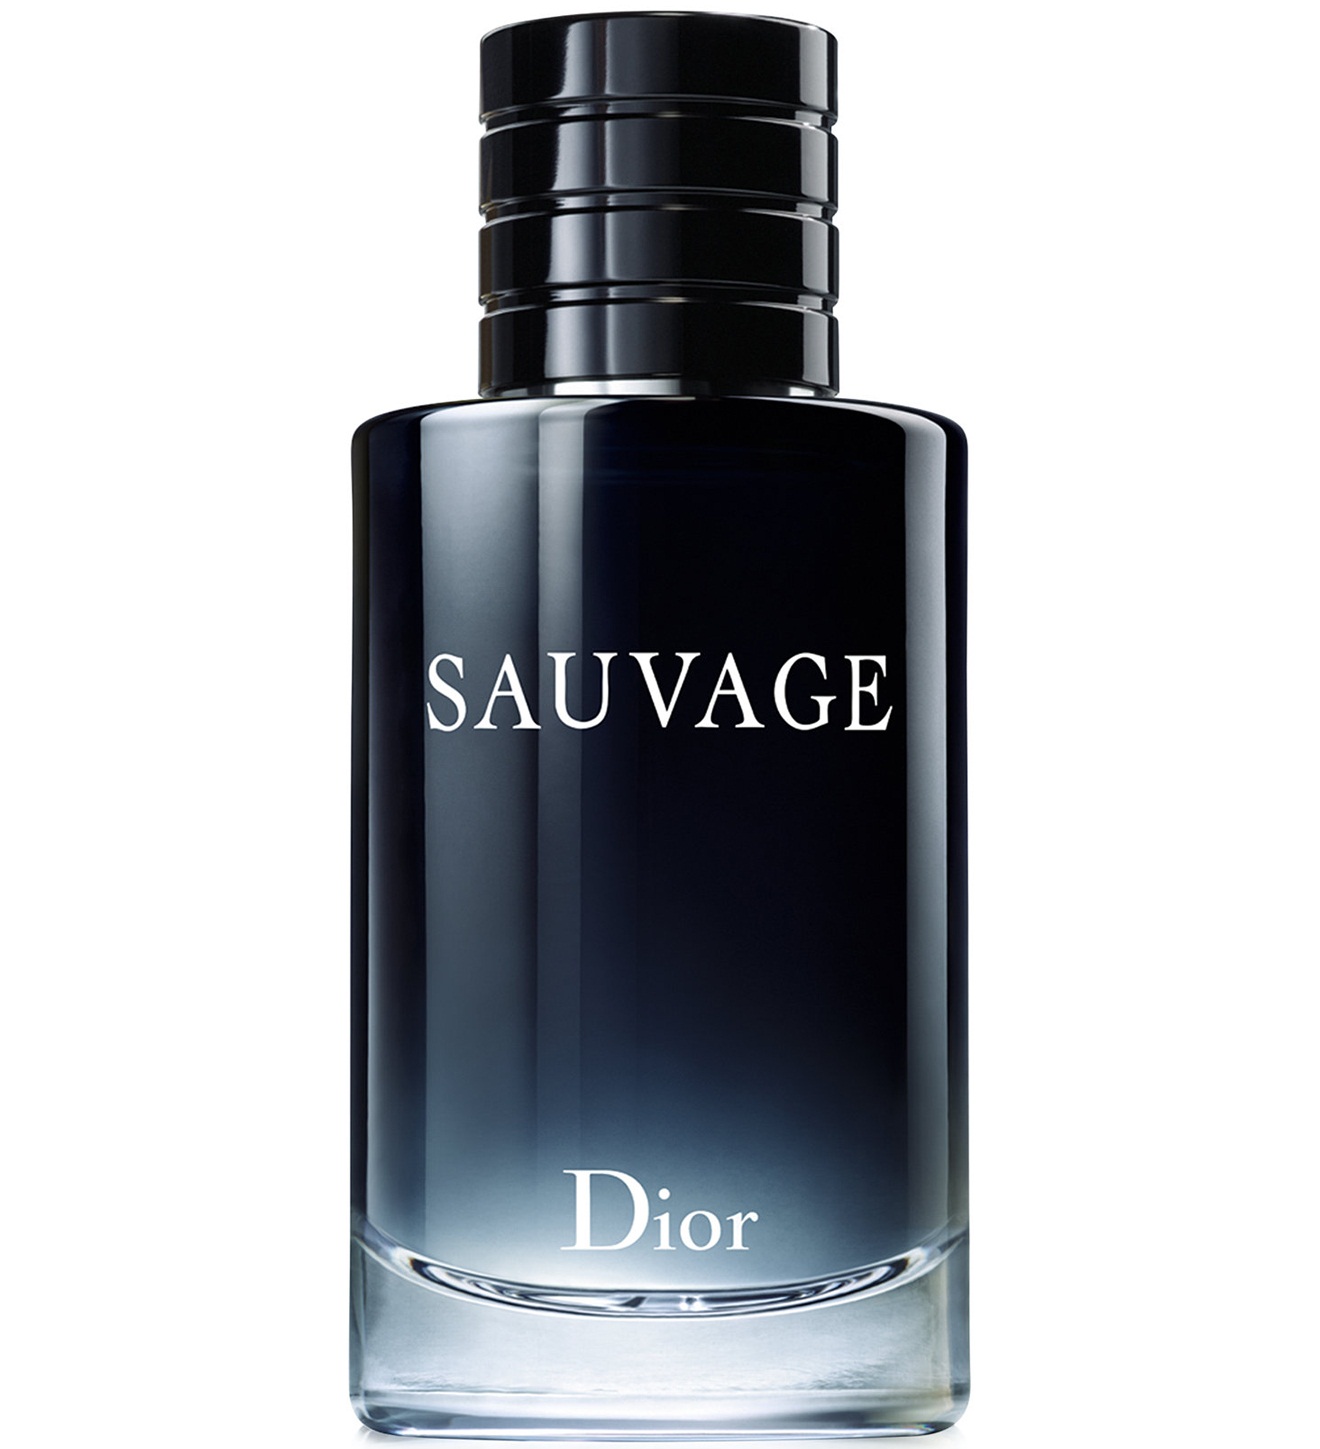 Nước hoa nam Sauvage Christian Dior for men mang hương thơm đậm chất hiện đại